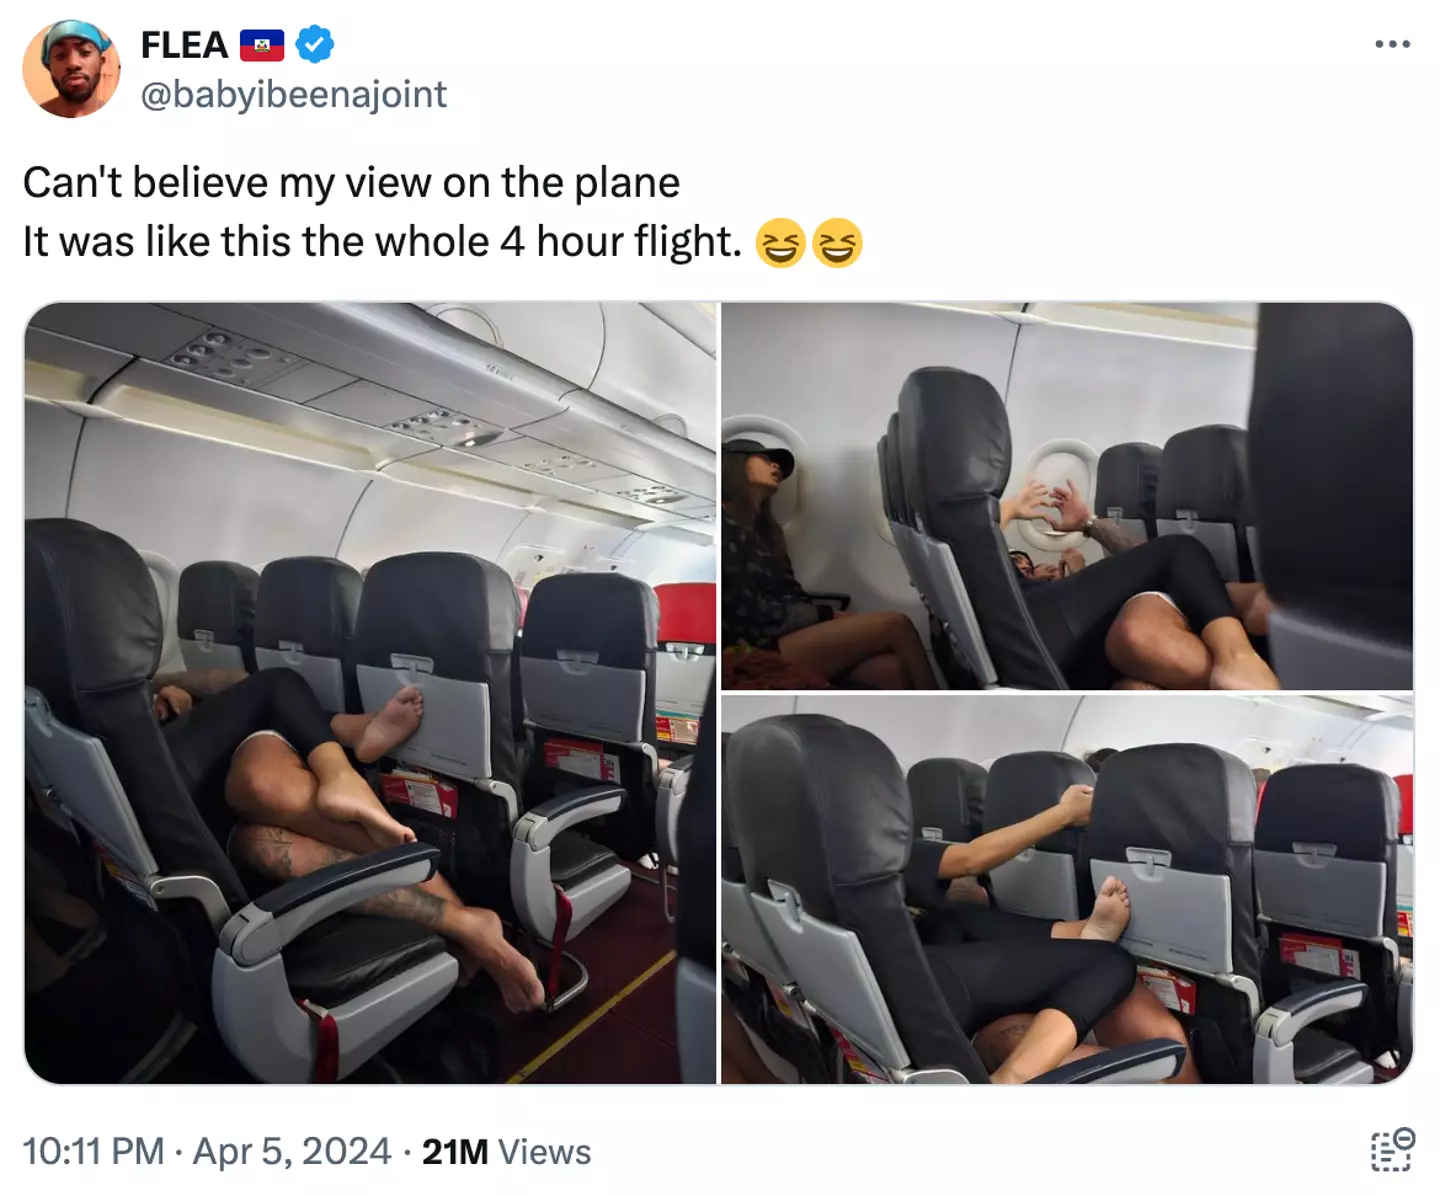 asomadetodosafetos.com - Passageiro de avião fica surpreso após sentar ao lado de casal que estava ‘muito próximo’ durante o voo